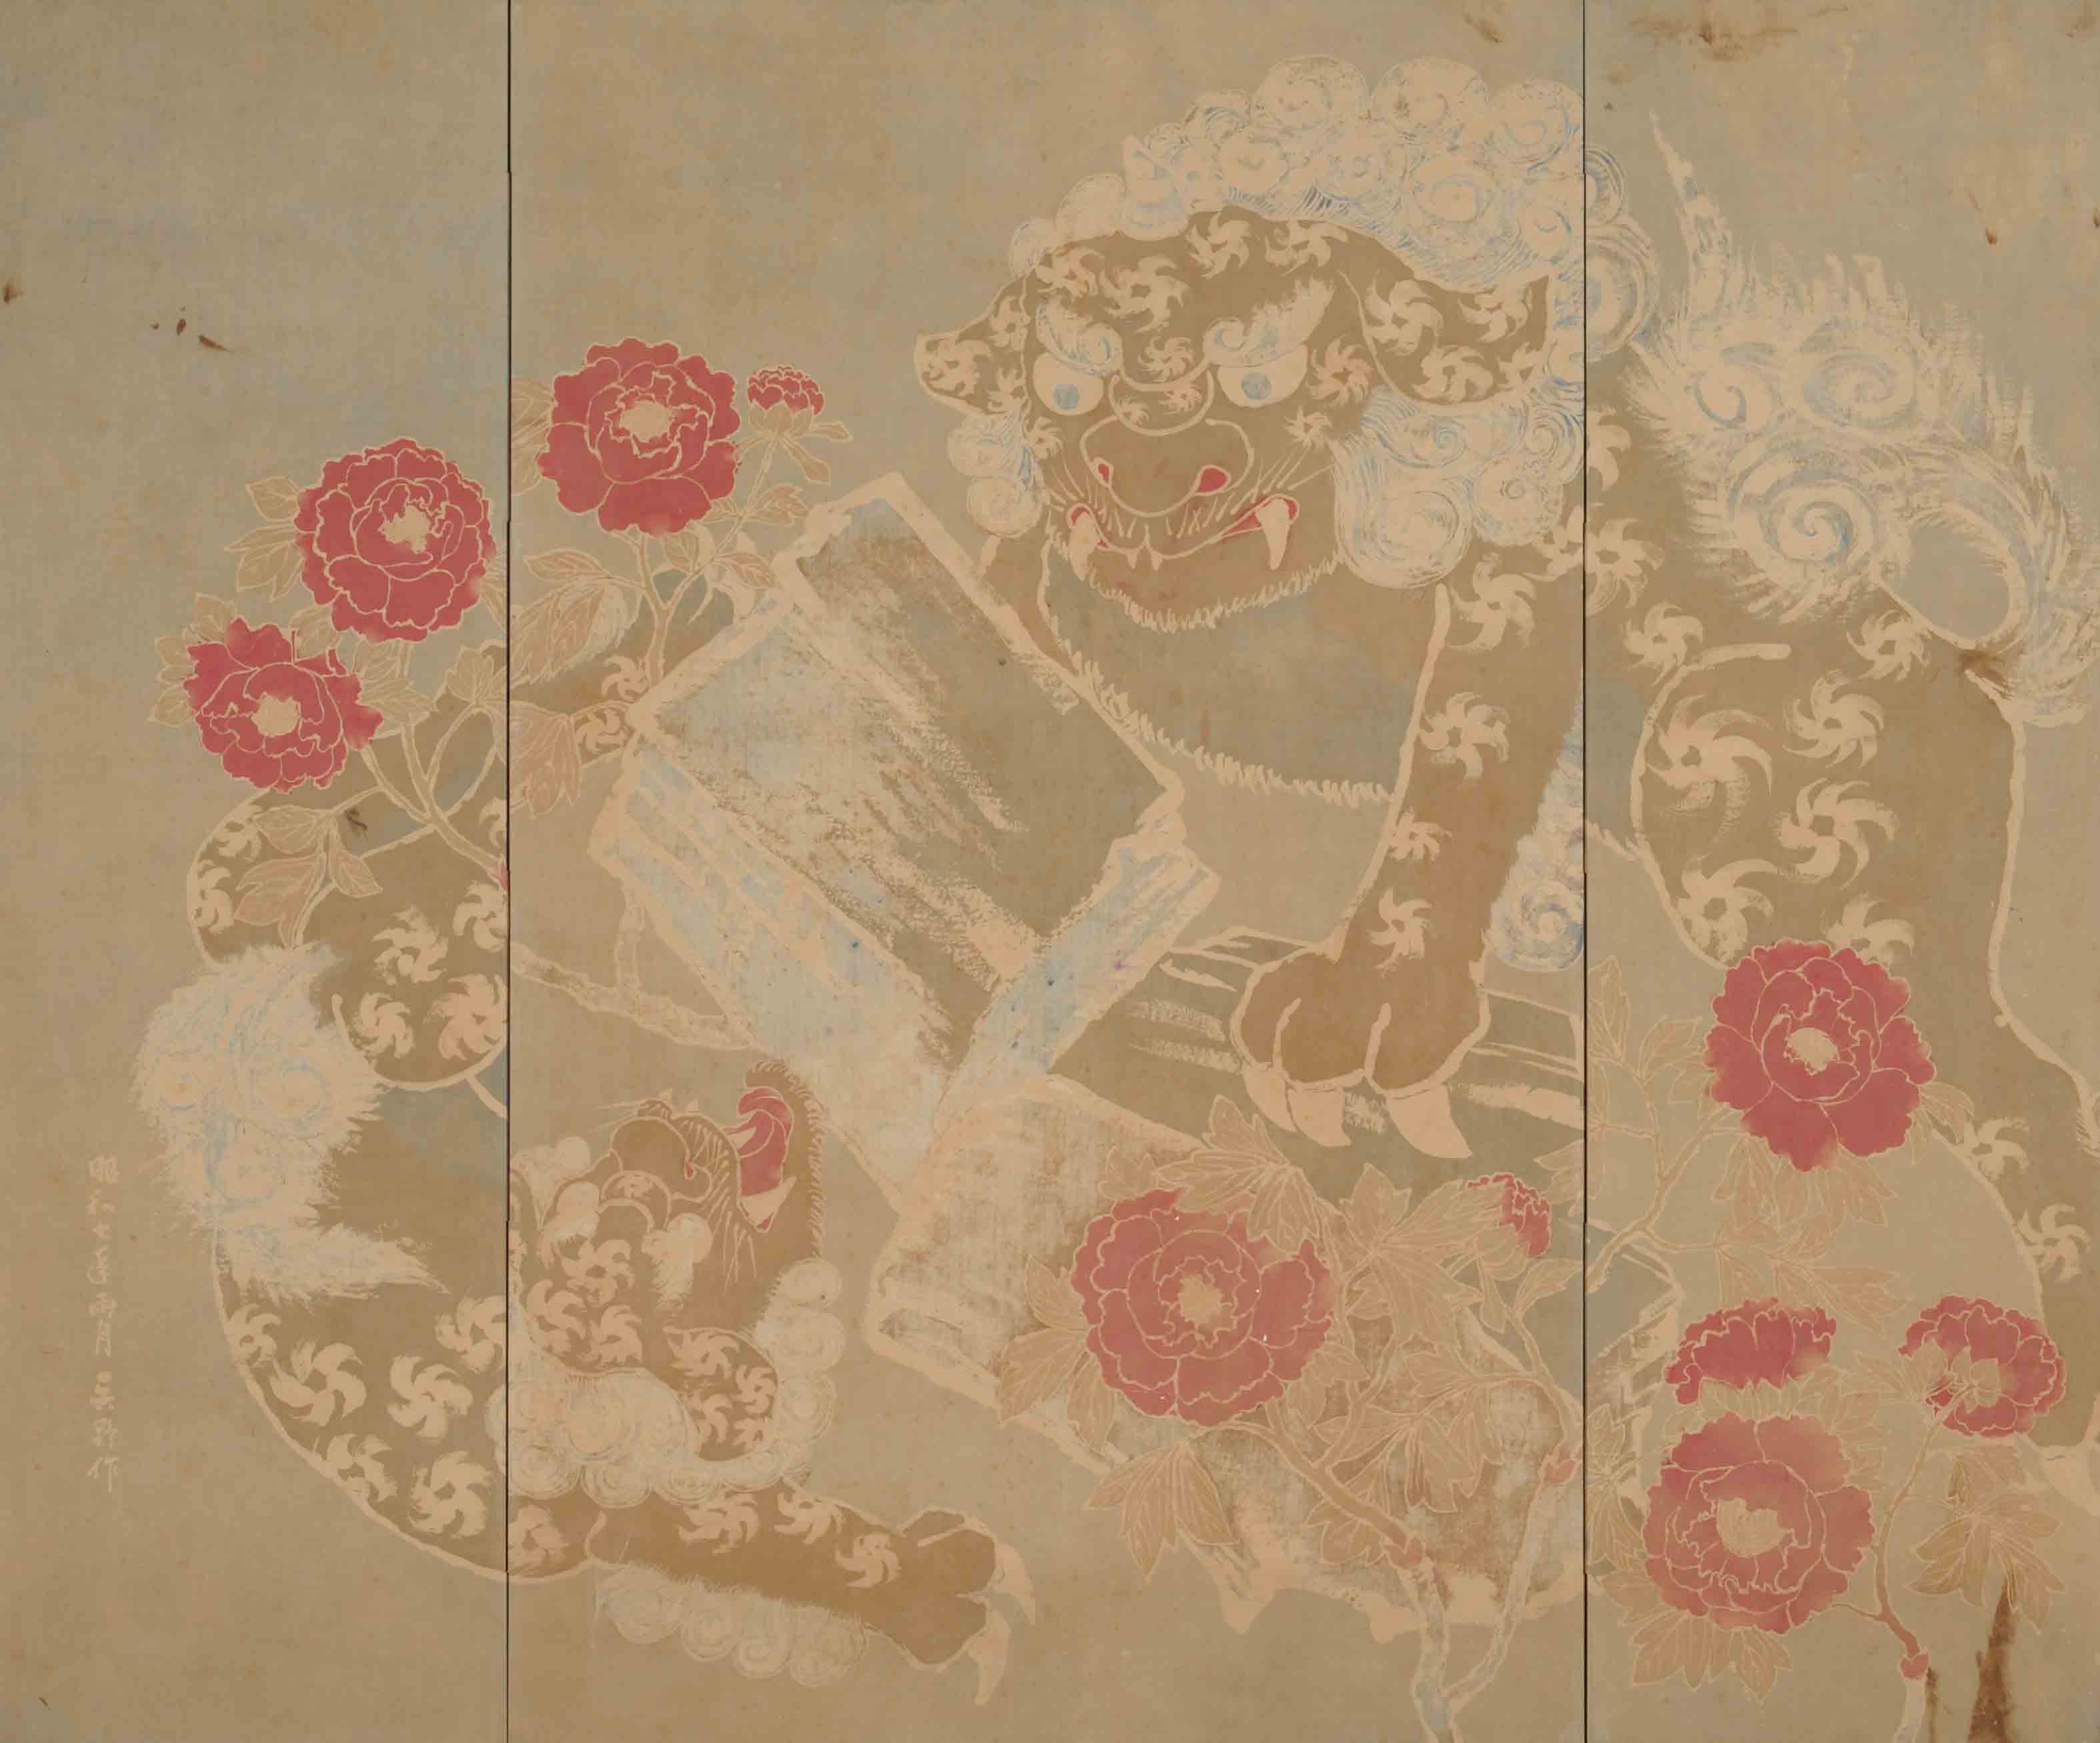 鶴巻鶴一「唐獅子牡丹臈纈染屏風」1932年　AN.2693　京都工芸繊維大学美術工芸資料館蔵